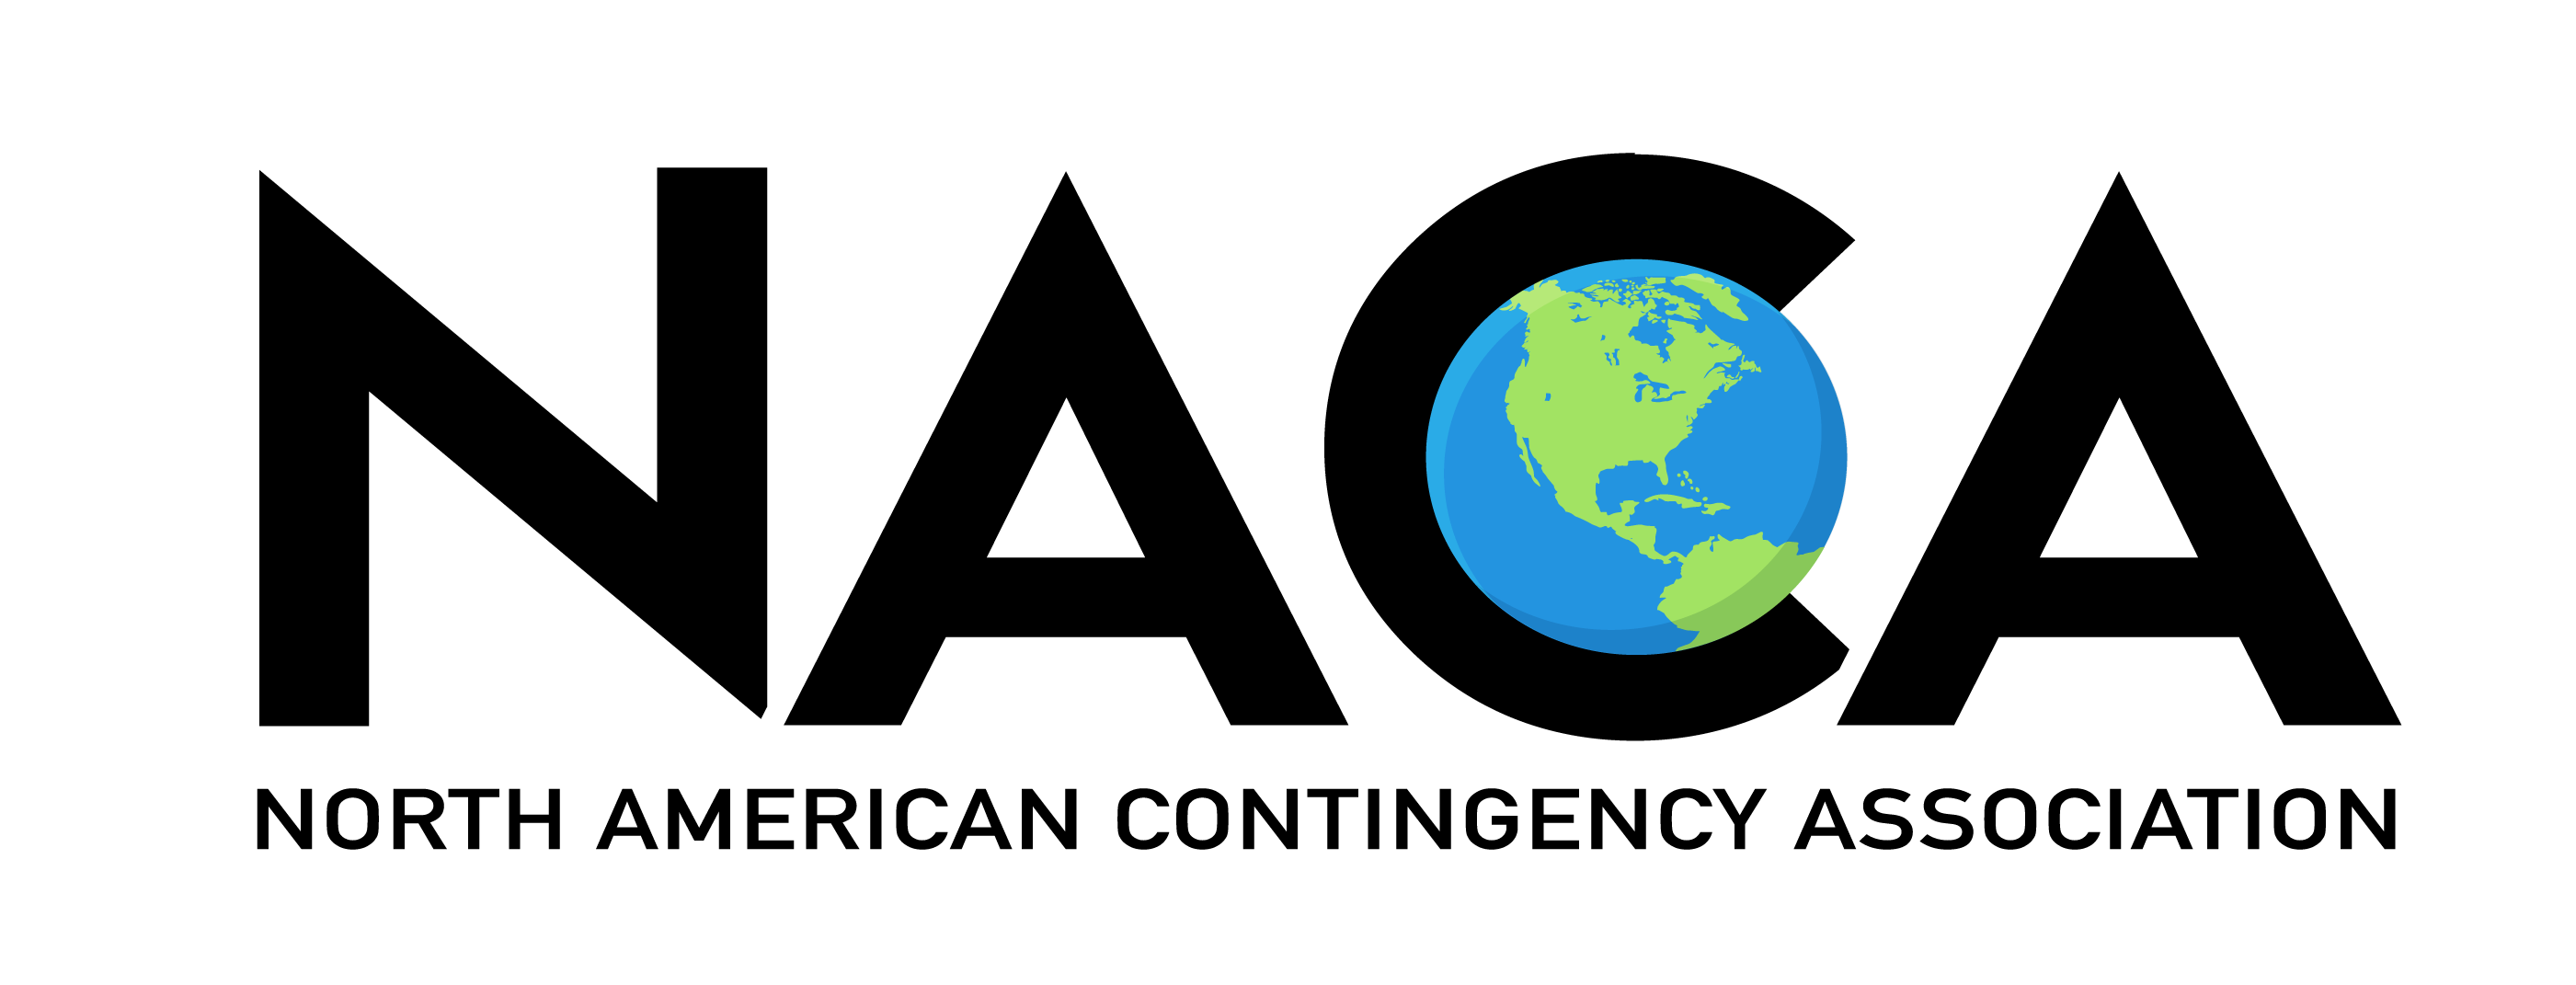 North American Contingency Association (NACA)